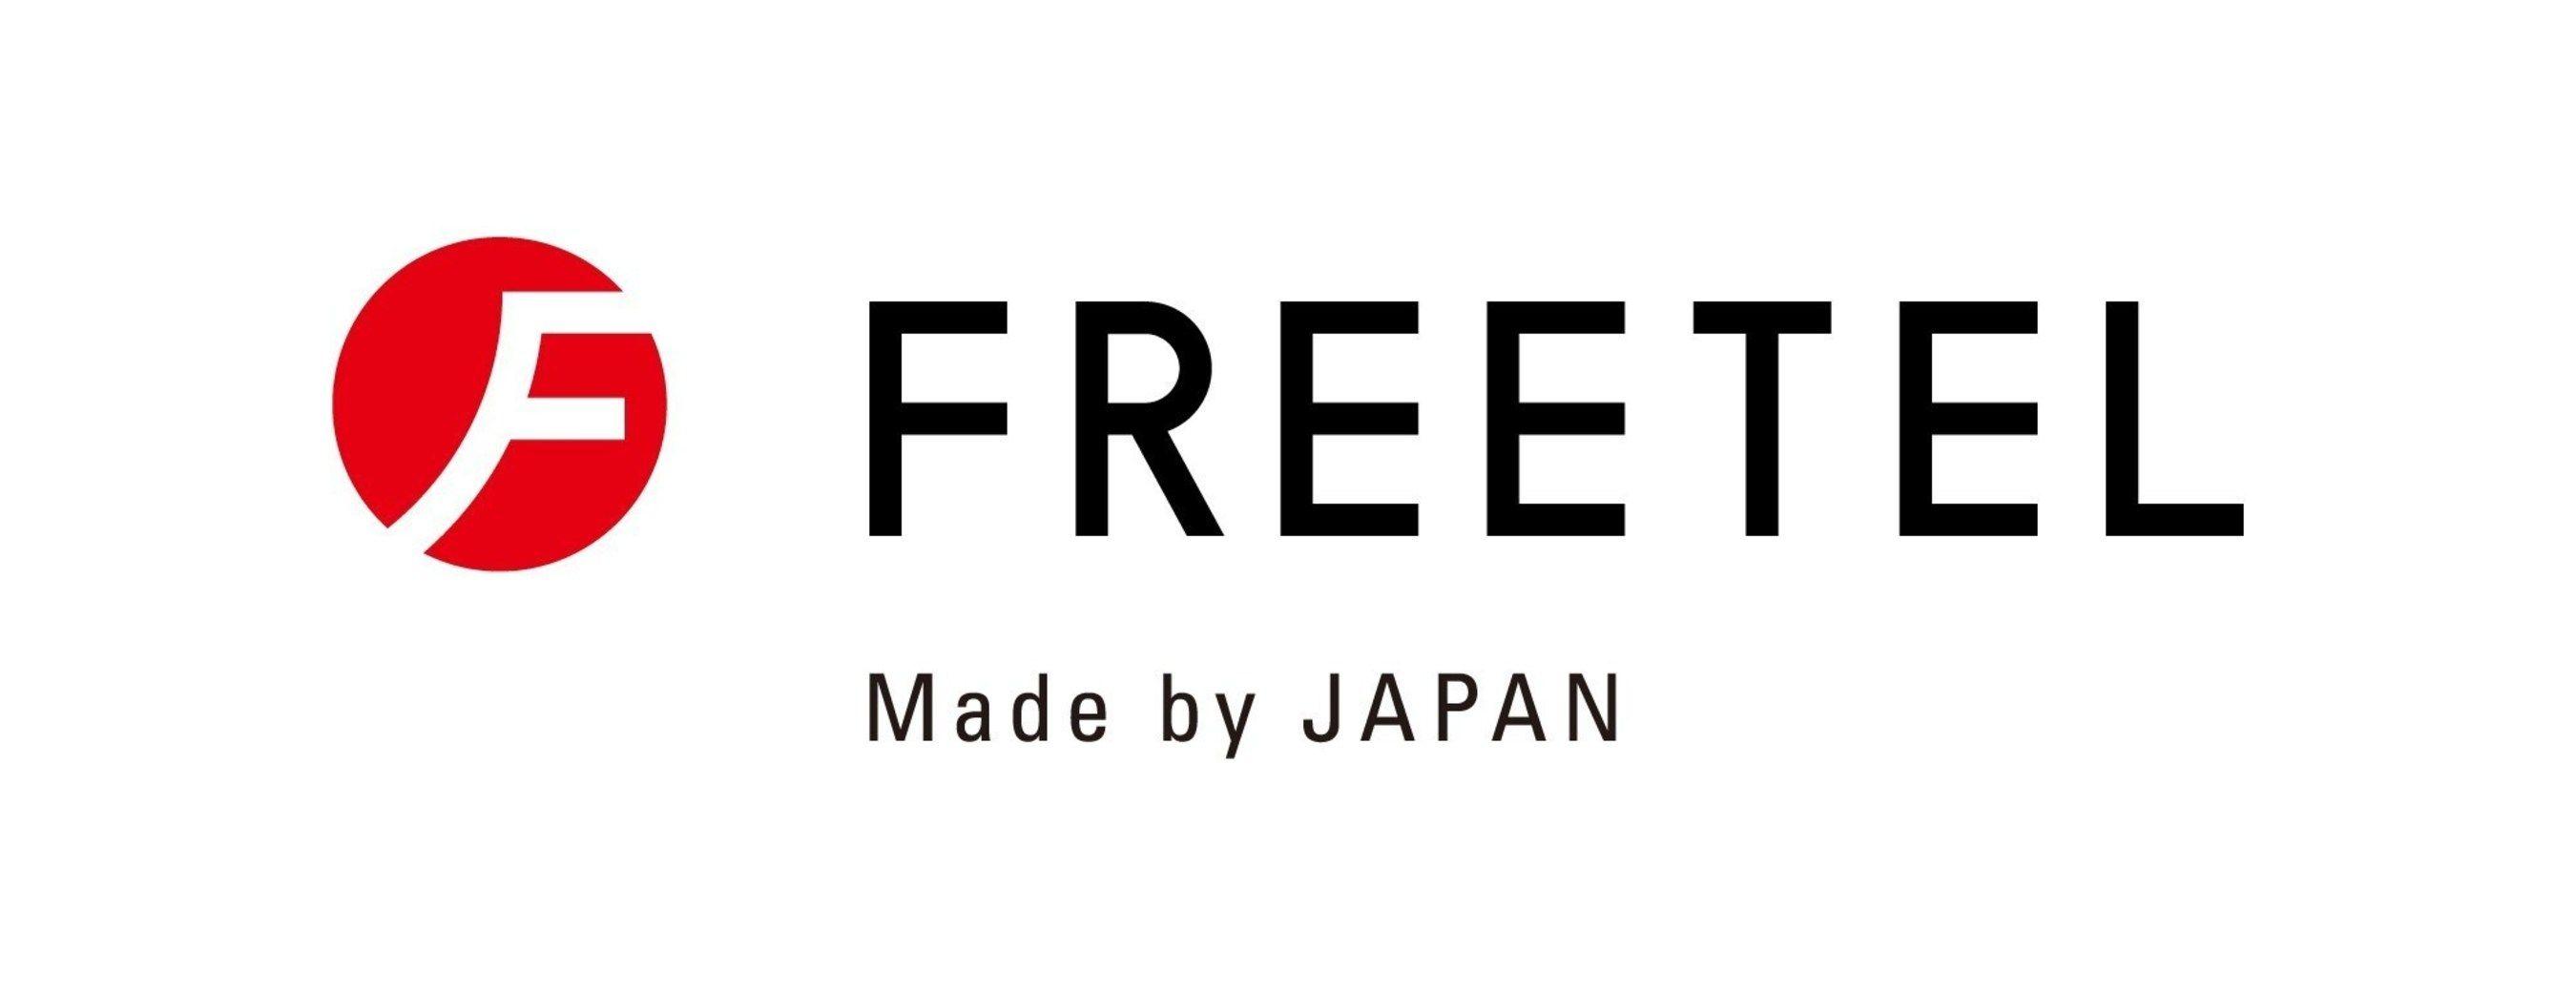 Japanese Manufacturer Logo - Japanese Mobile Handset Manufacturer - FREETEL - Makes U.S. Debut At ...